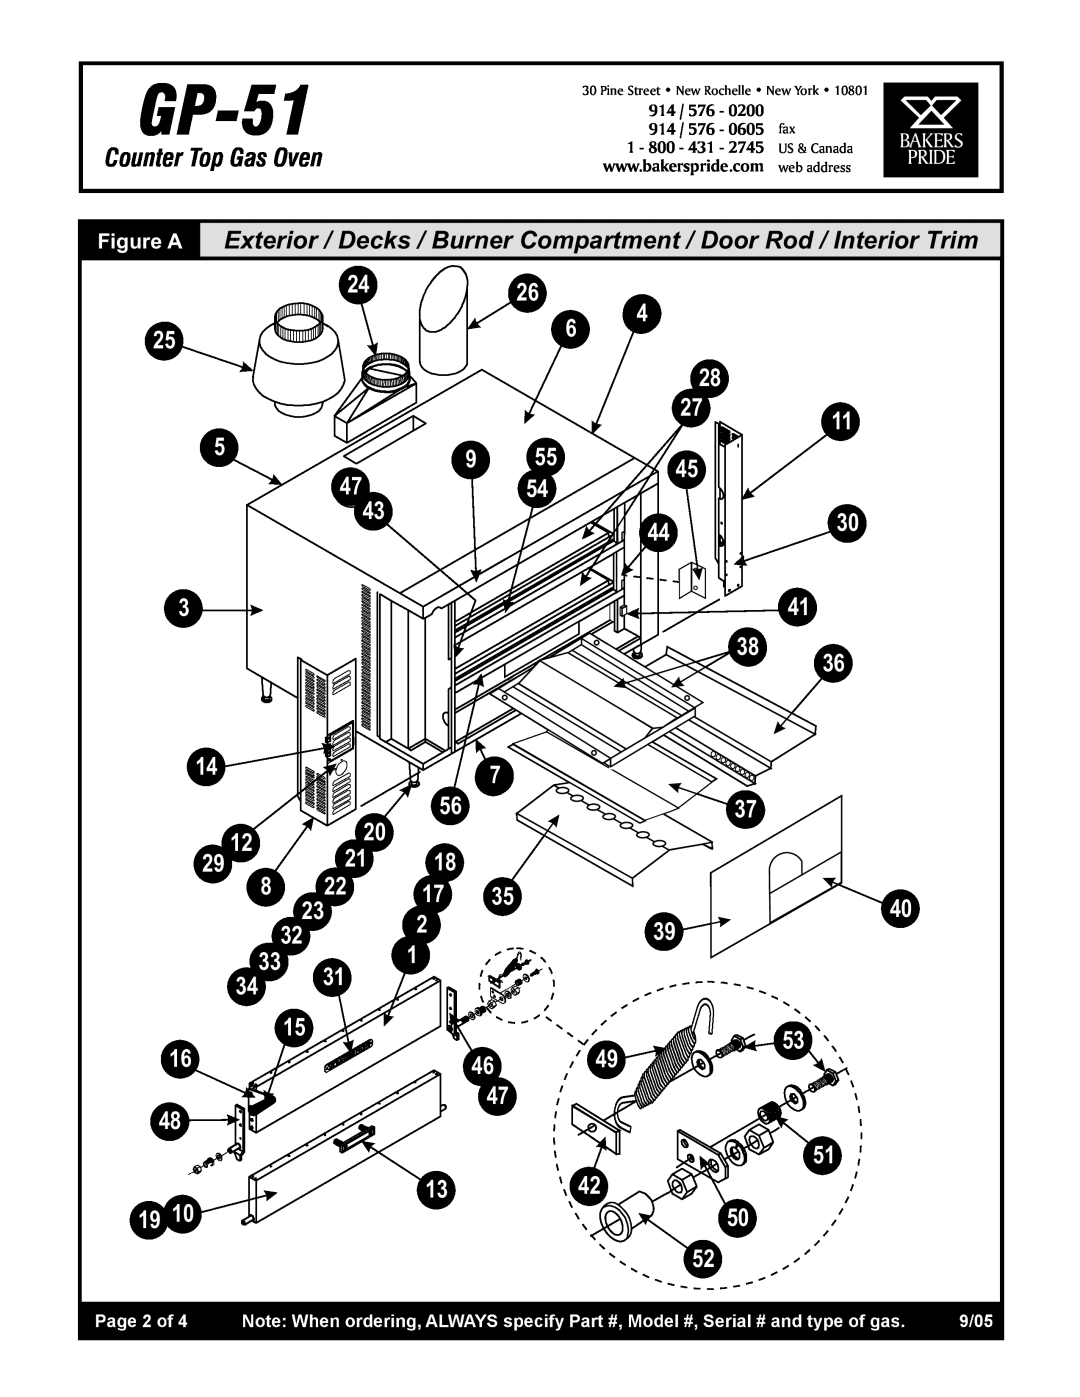 Bakers Pride Oven GP-51 manual 9/05 